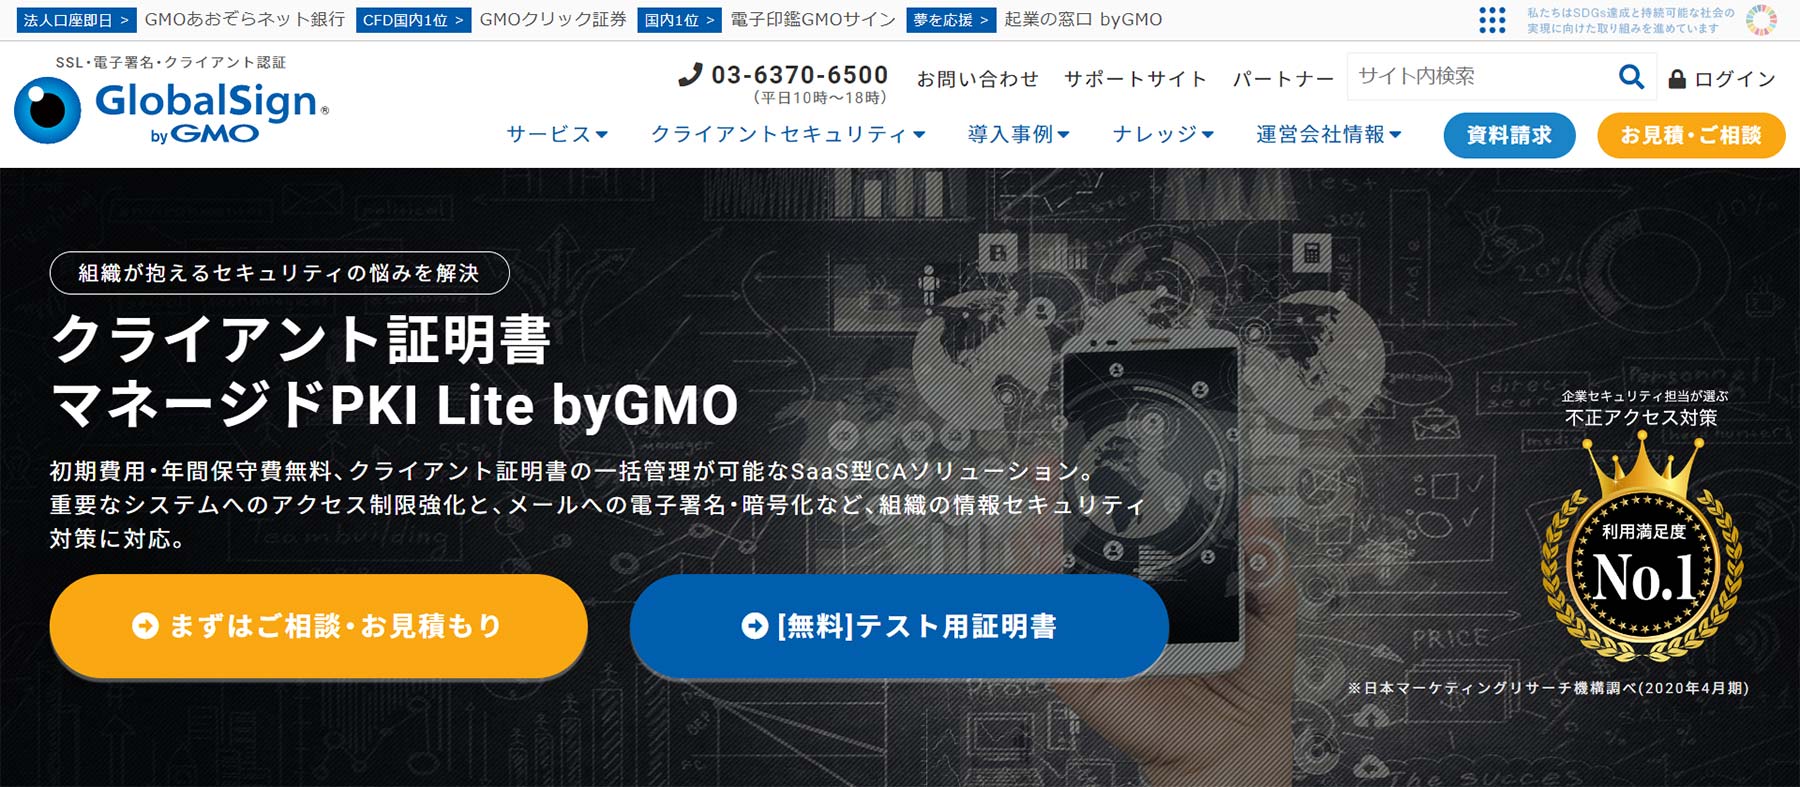 マネージドPKI Lite byGMO公式Webサイト